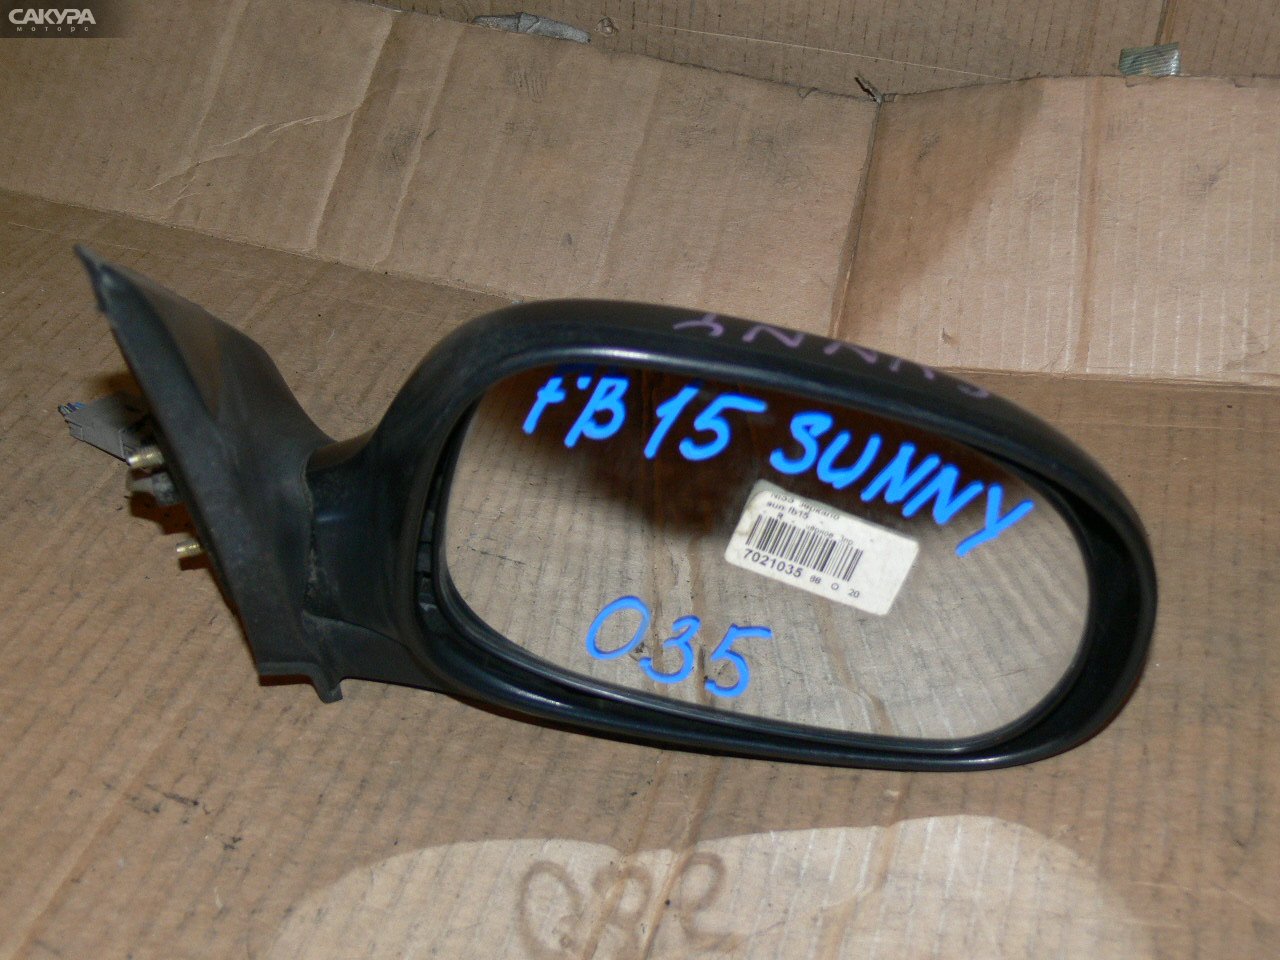 Зеркало боковое правое Nissan Sunny FB15: купить в Сакура Иркутск.